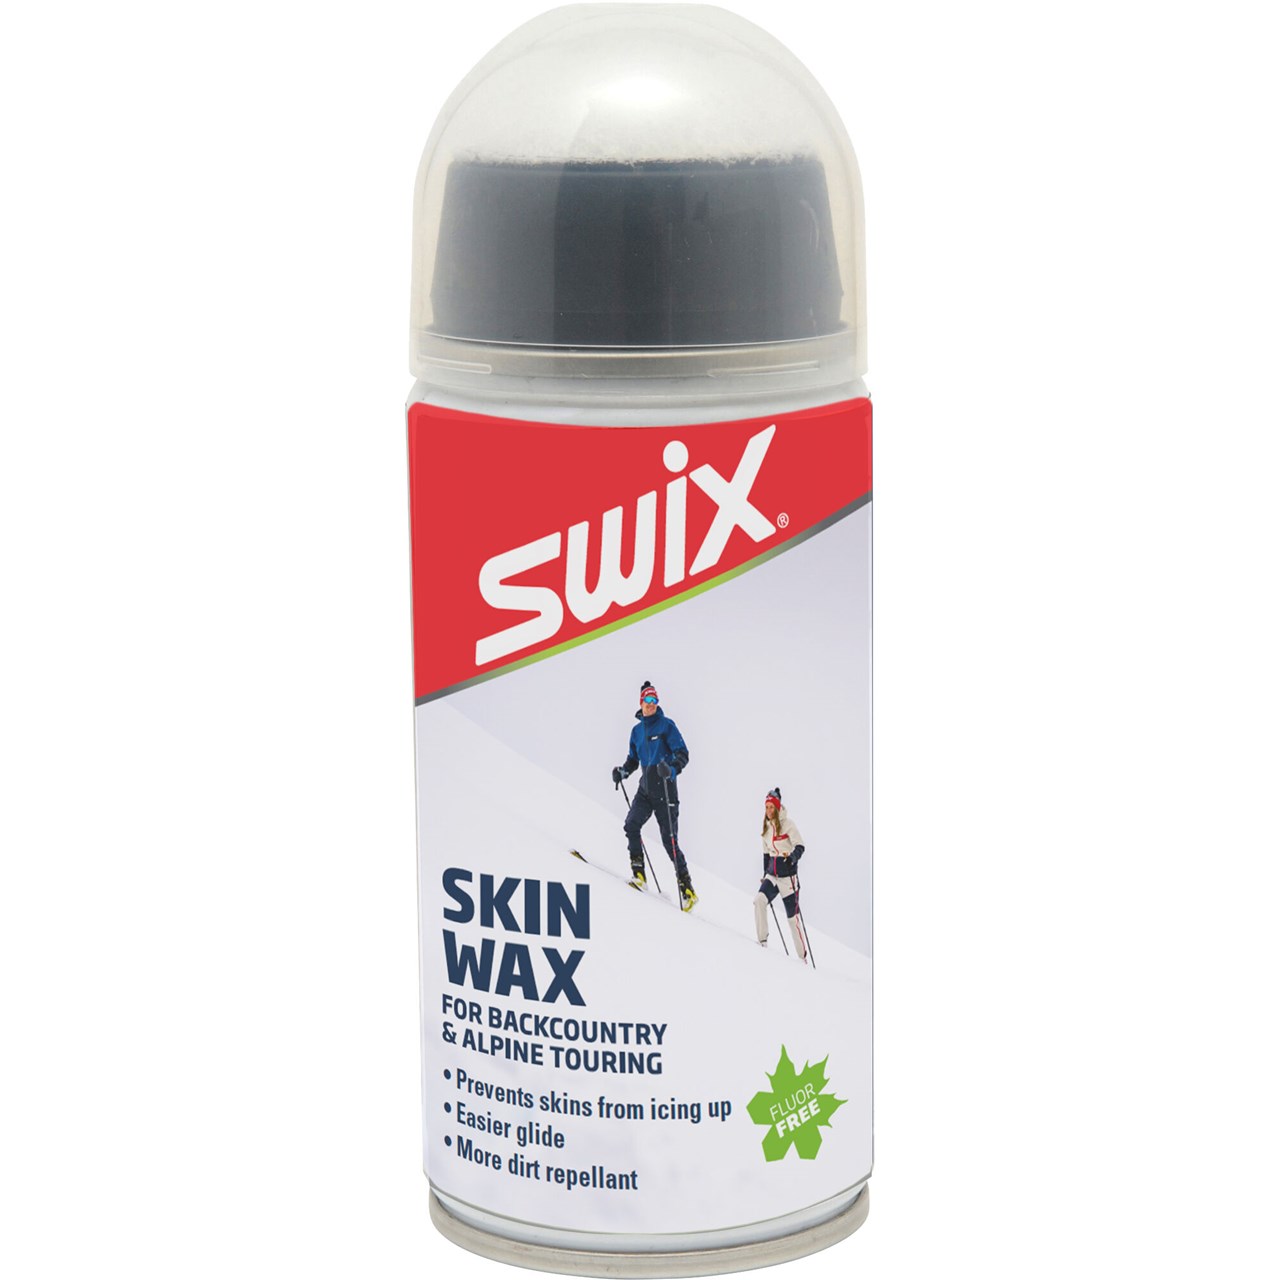 SWIX Skin wax